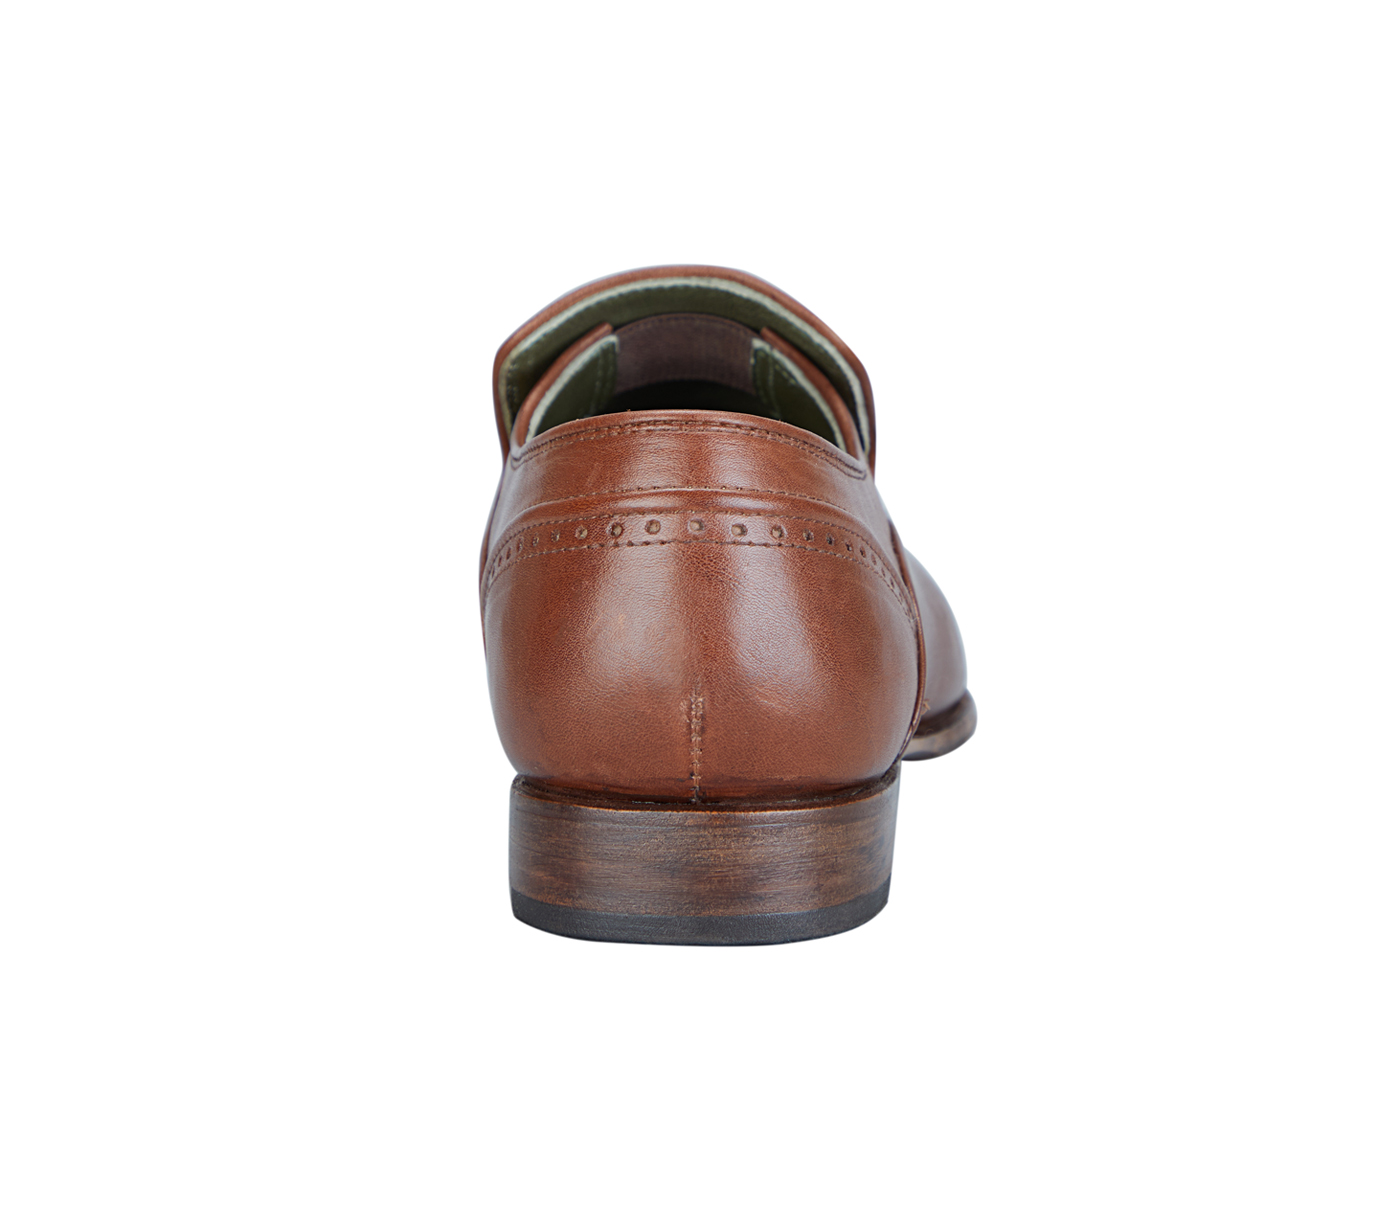 PF35-Adamis Pure Leather Footwear For Men- - Tan